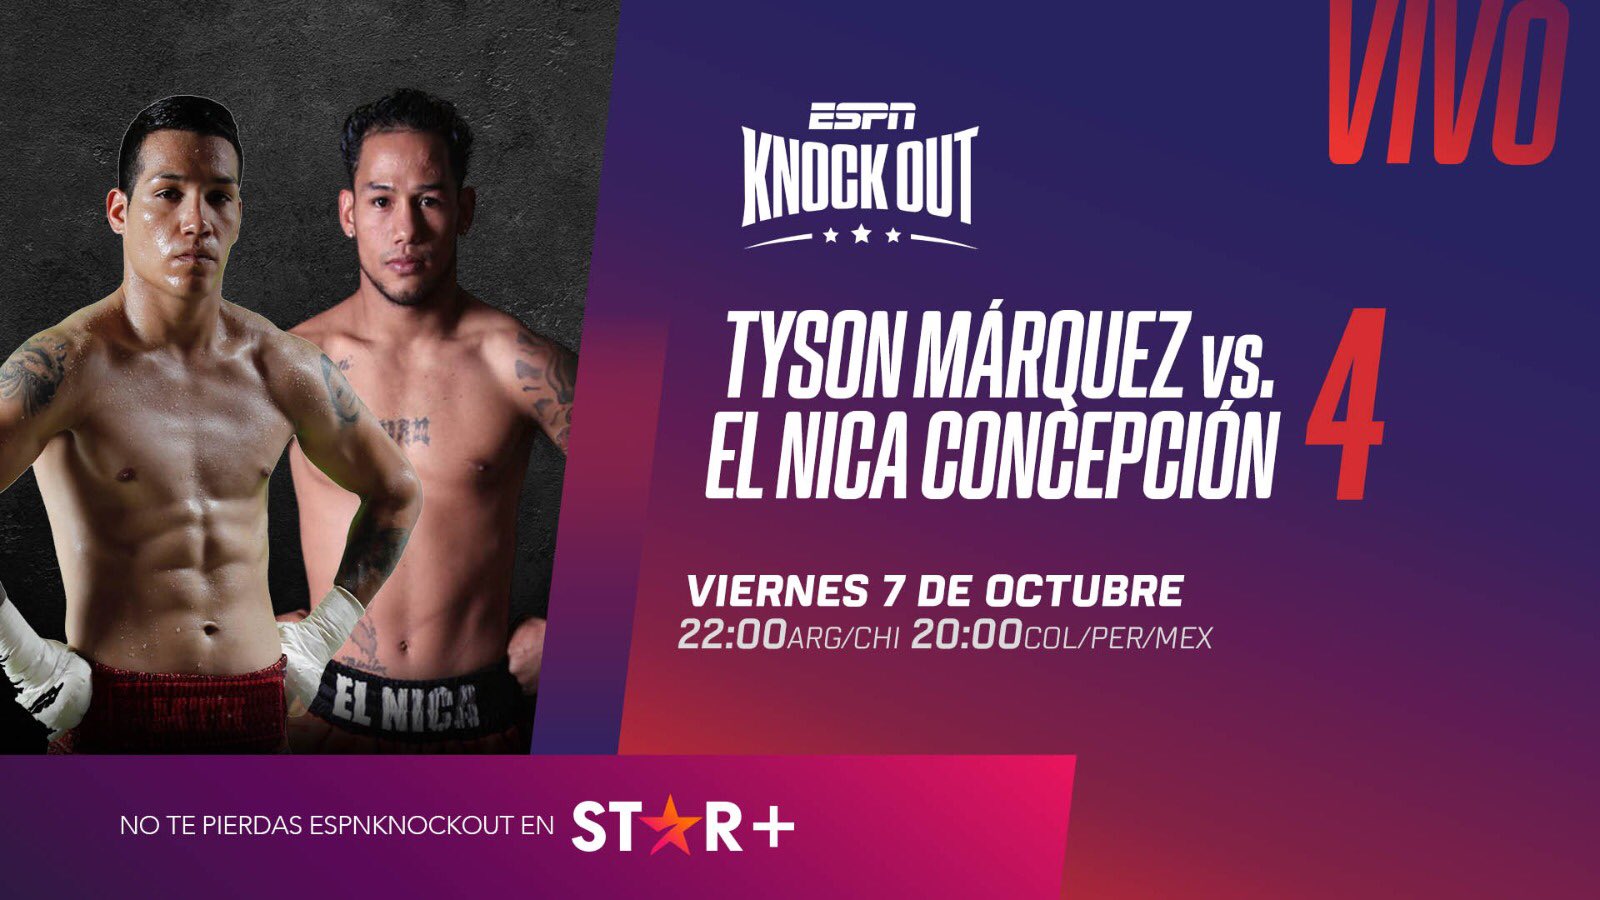 Tyson Márquez vs Nica Concepción